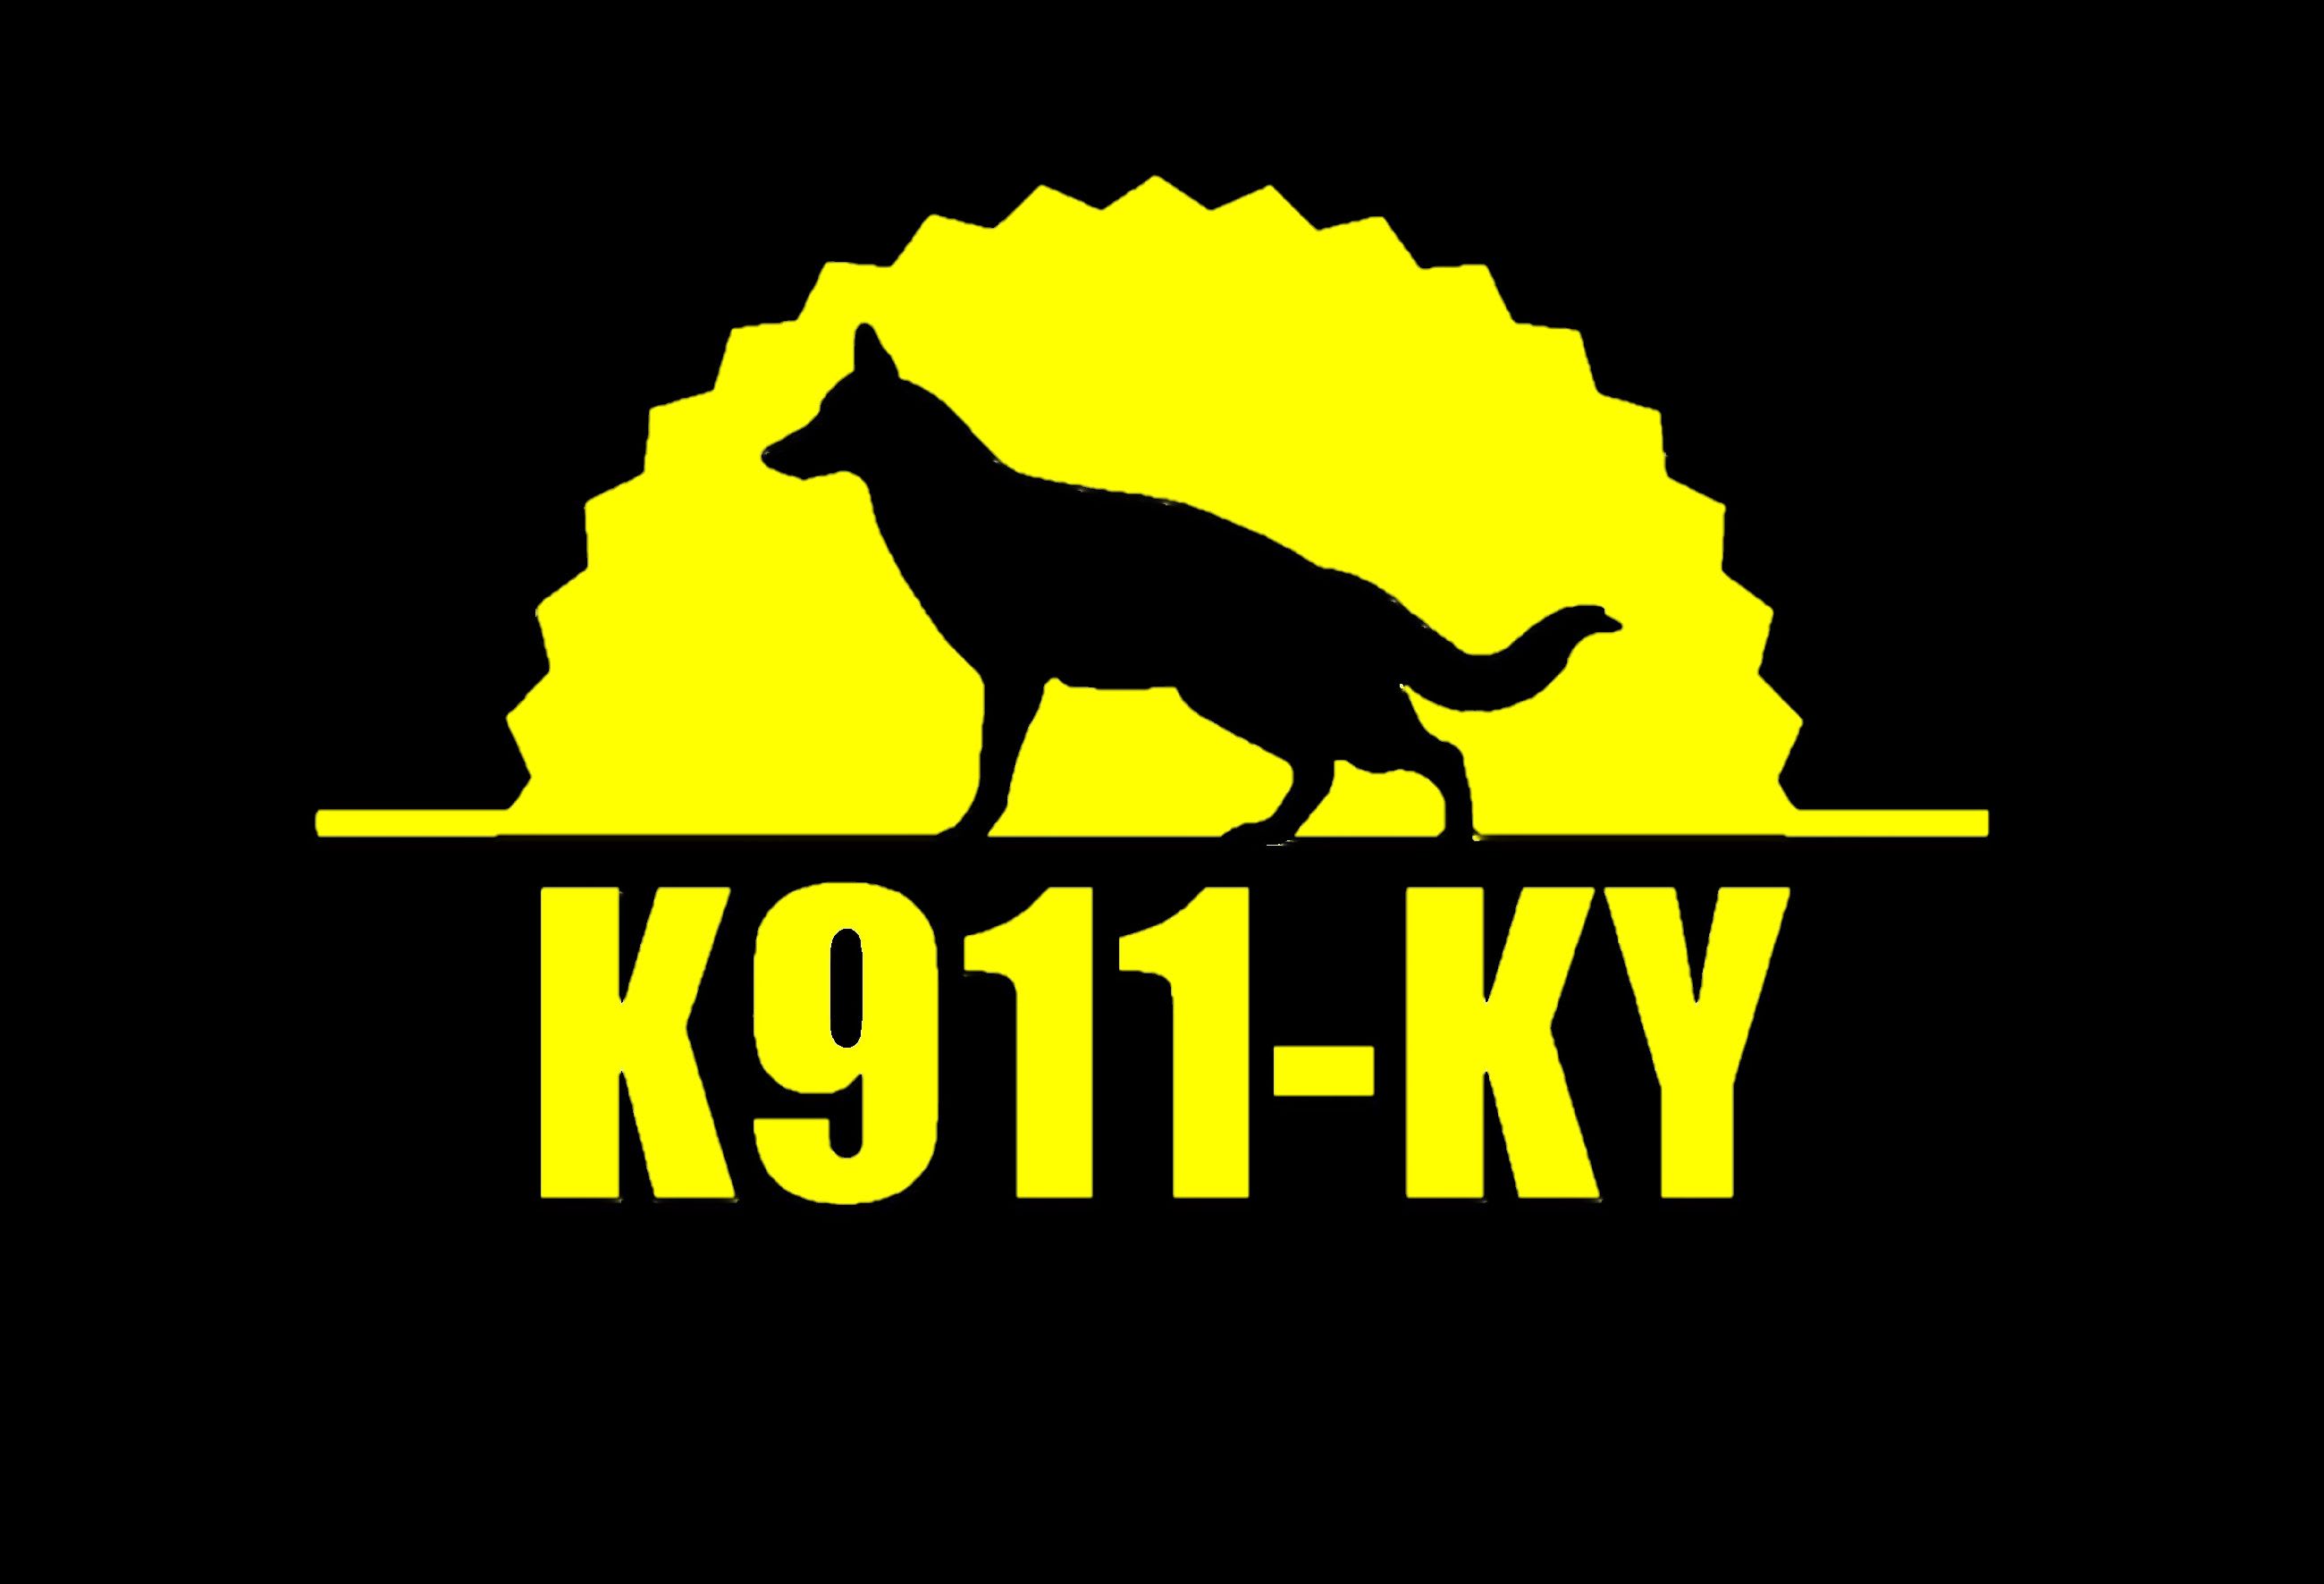 K911-Ky Inc